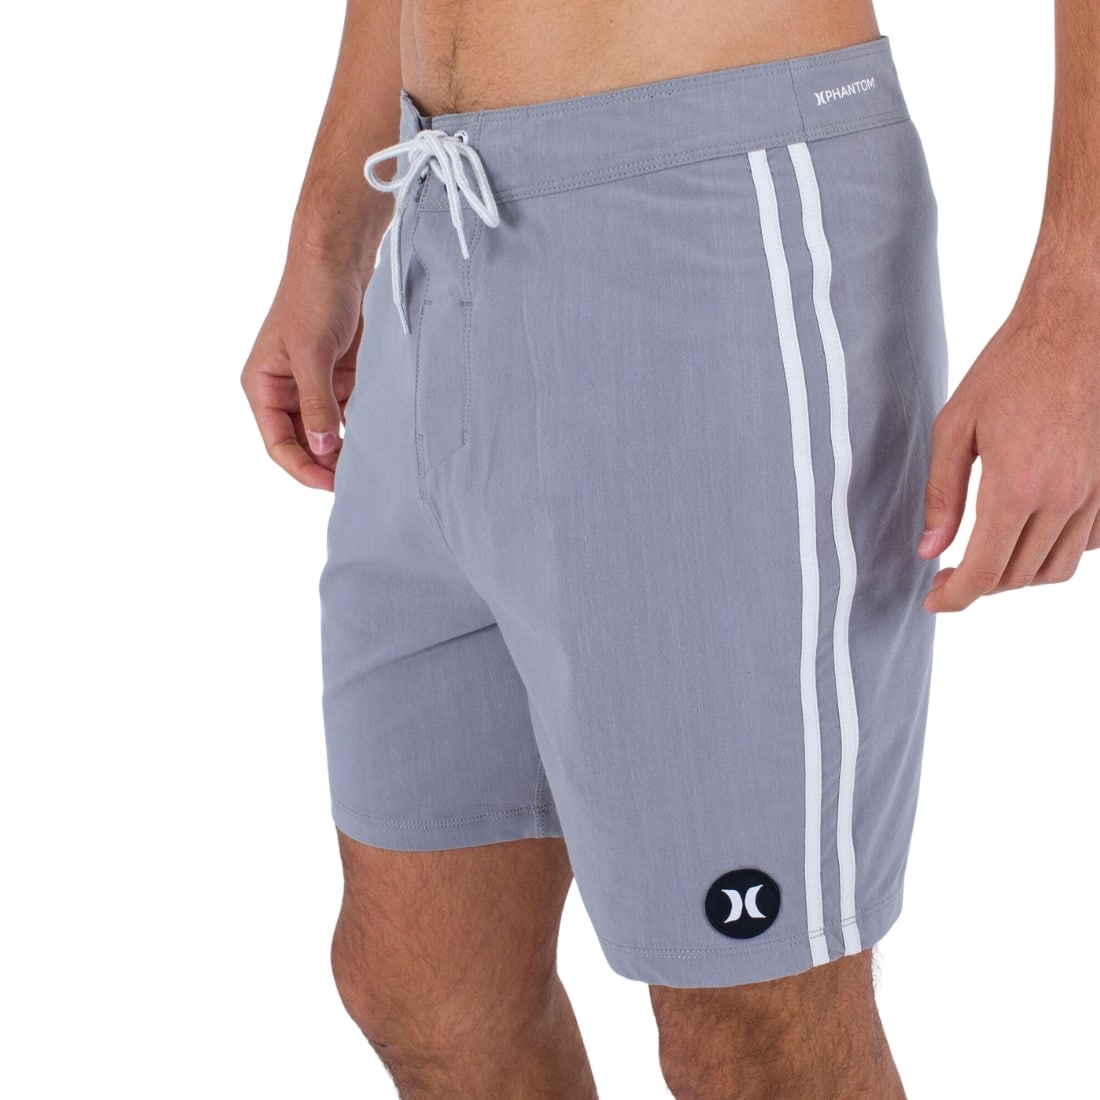 Hurley Phantom Naturals Tailgate Shorts - Particle Grey - Mens Walk Shorts by Hurley